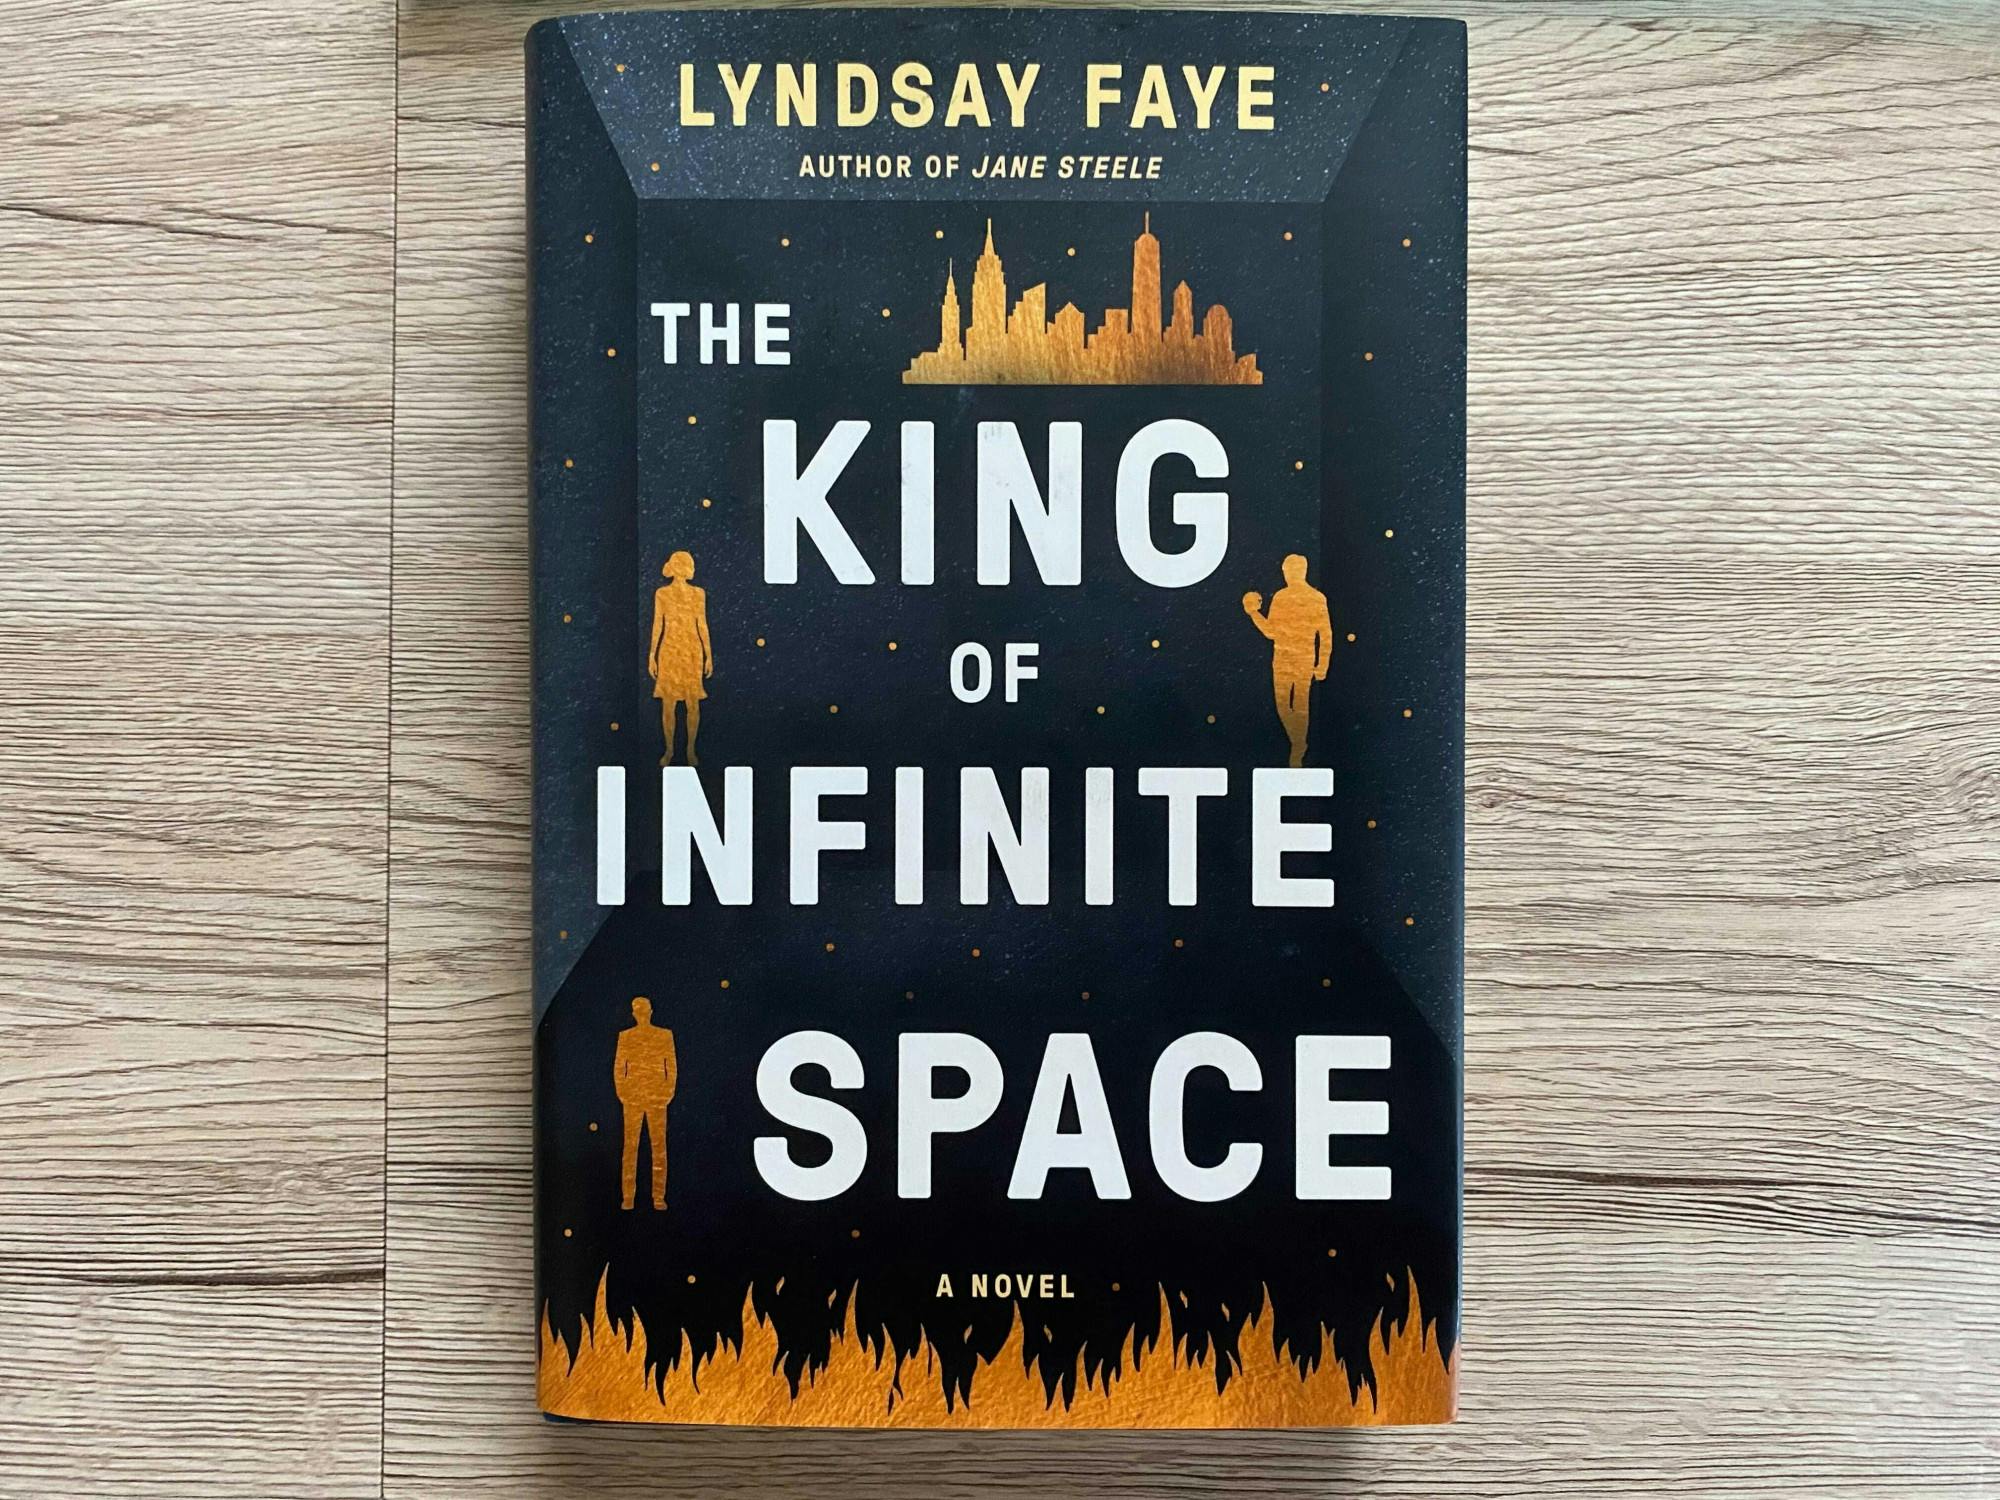 Kings of Infinite Space by James Hynes